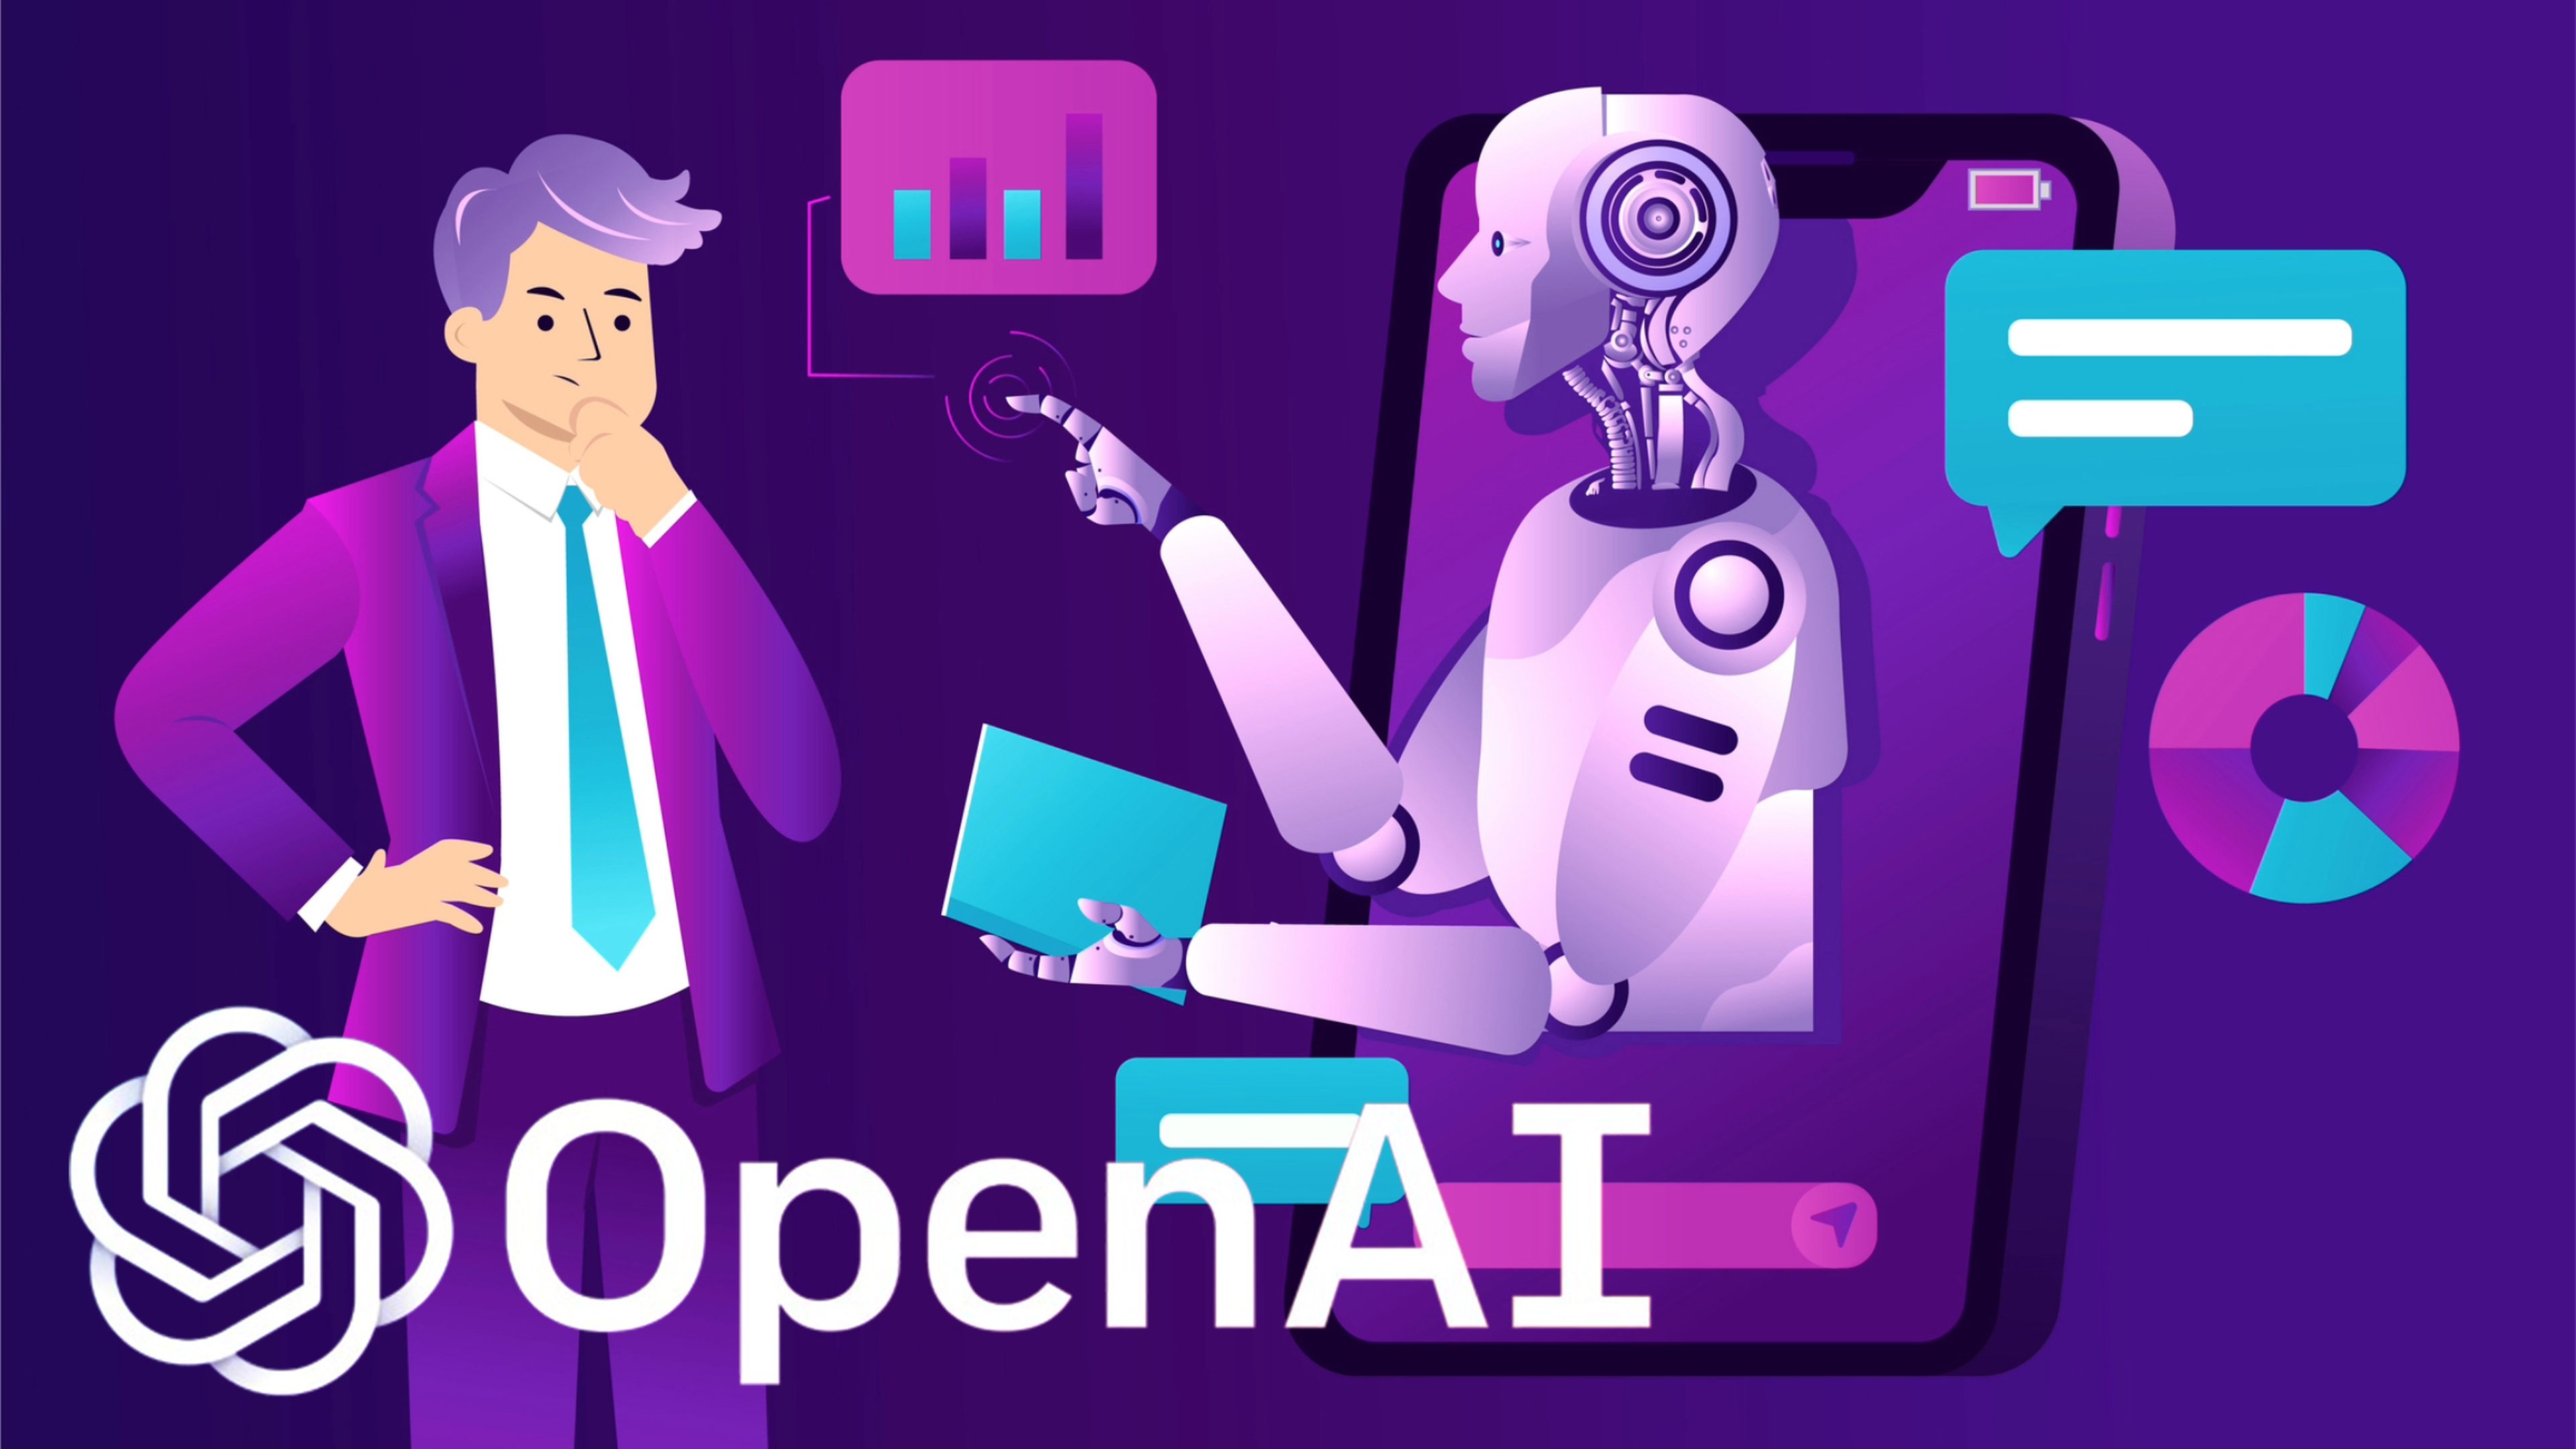 OpenAI chatbots IA